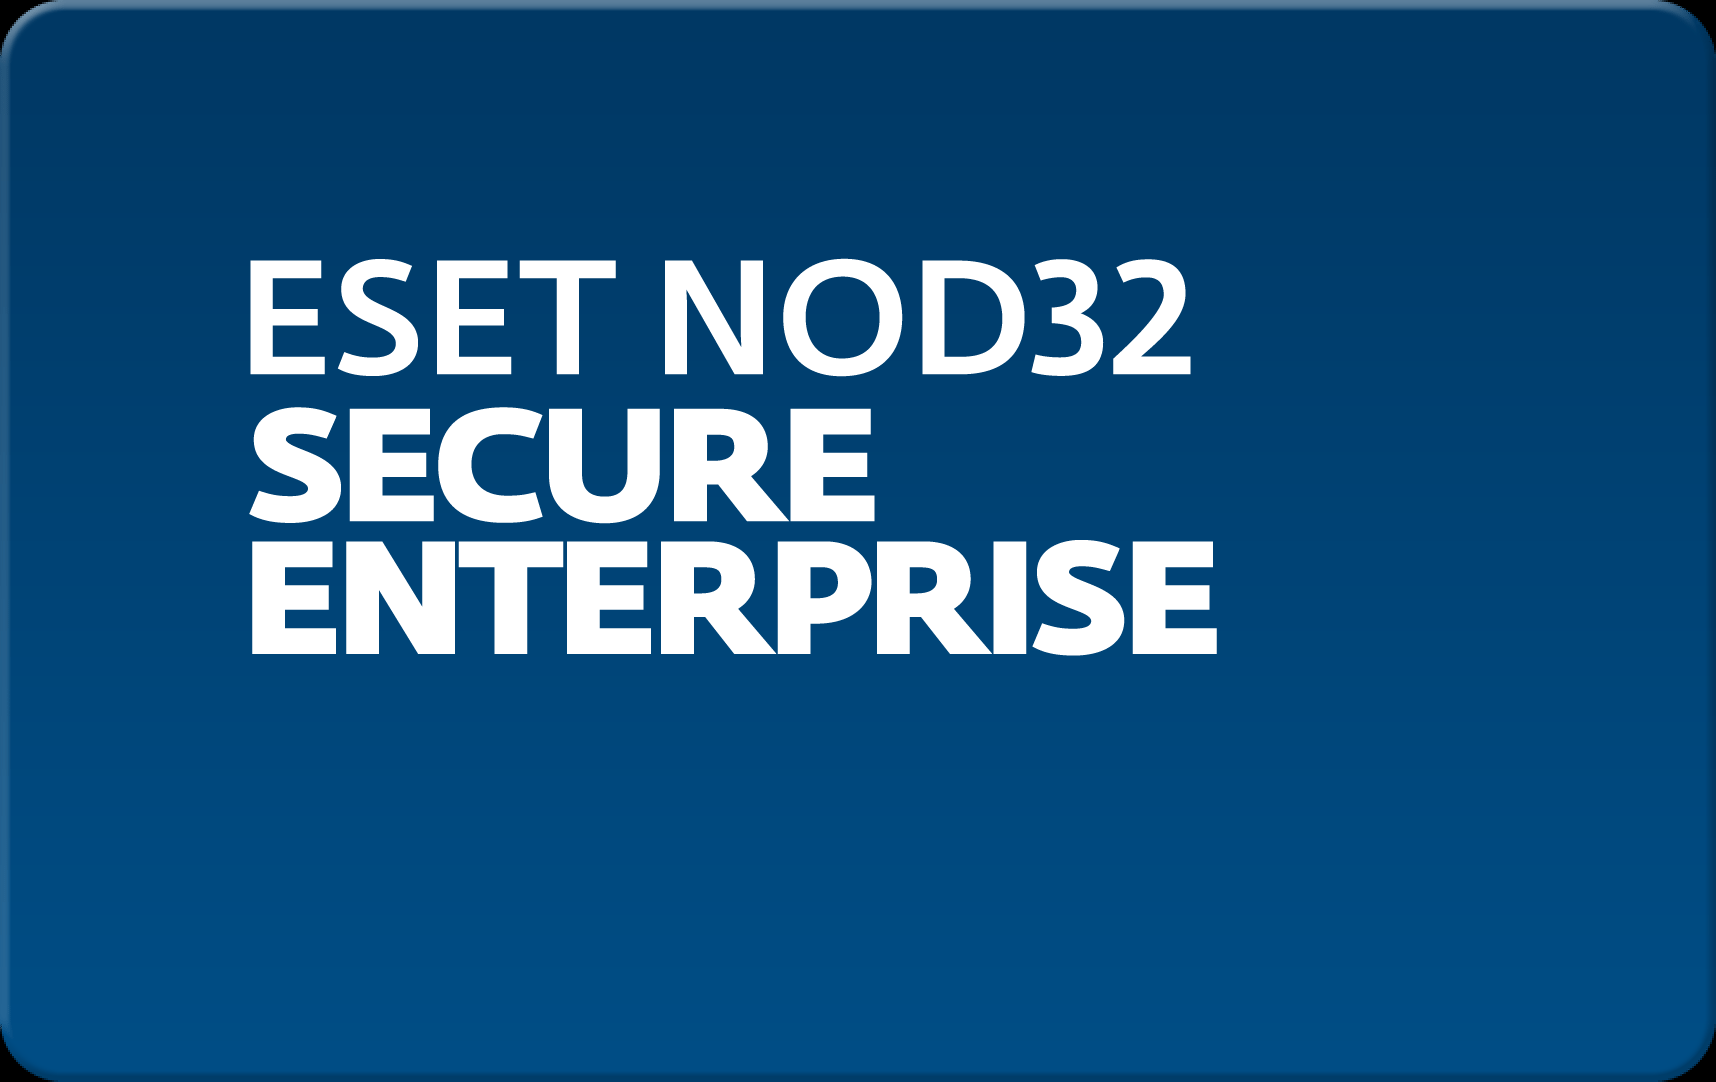        Eset NOD32 Secure Enterprise  158  NOD32-ESE-NS-1-158  #1